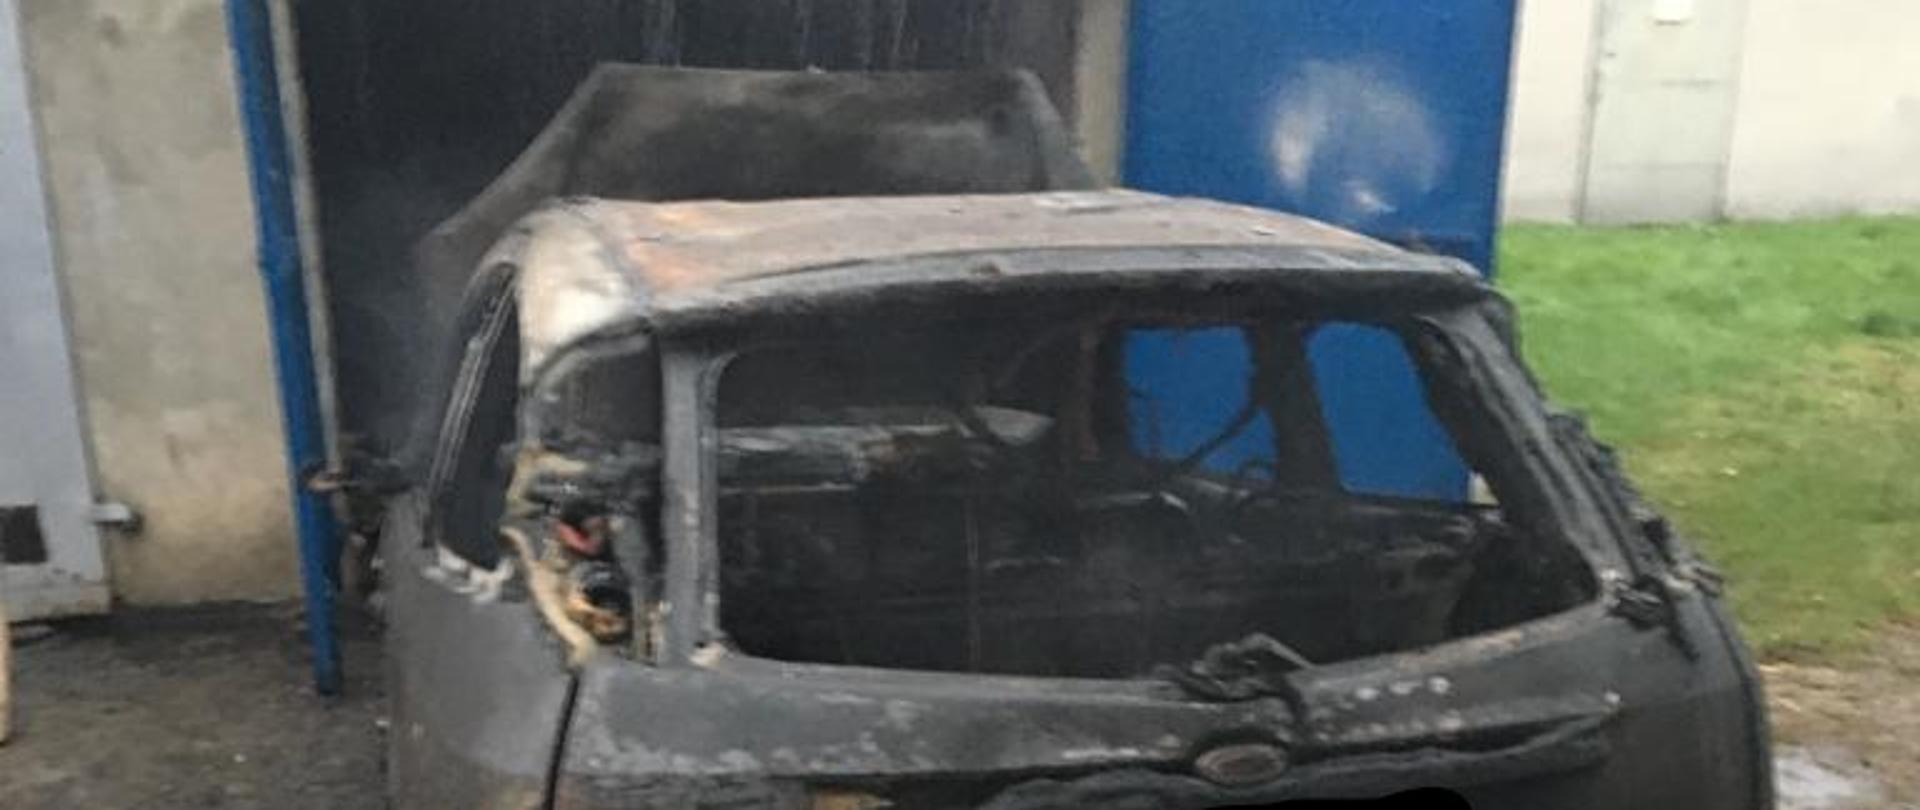 Centralnie na zdjęciu znajduje się samochód osobowy, który w wyniku pożaru uległ całkowicie zniszczeniu. Również widać murowany garaż w którym powstał pożar.